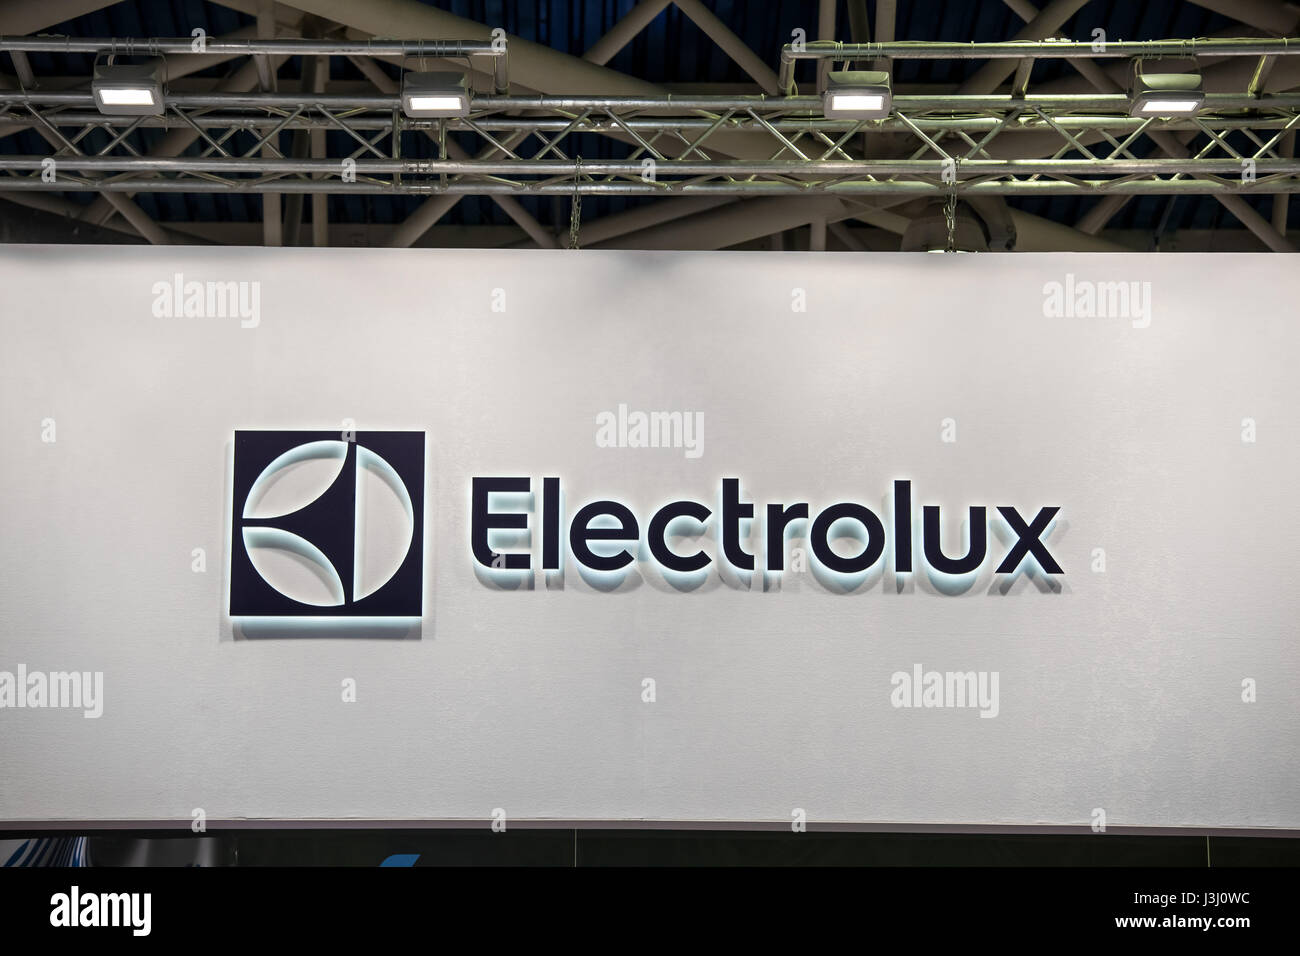 Logo de l'entreprise AB Electrolux sur le mur. Electrolux est une multinationale suédoise accueil fabricant d'appareils ménagers Banque D'Images